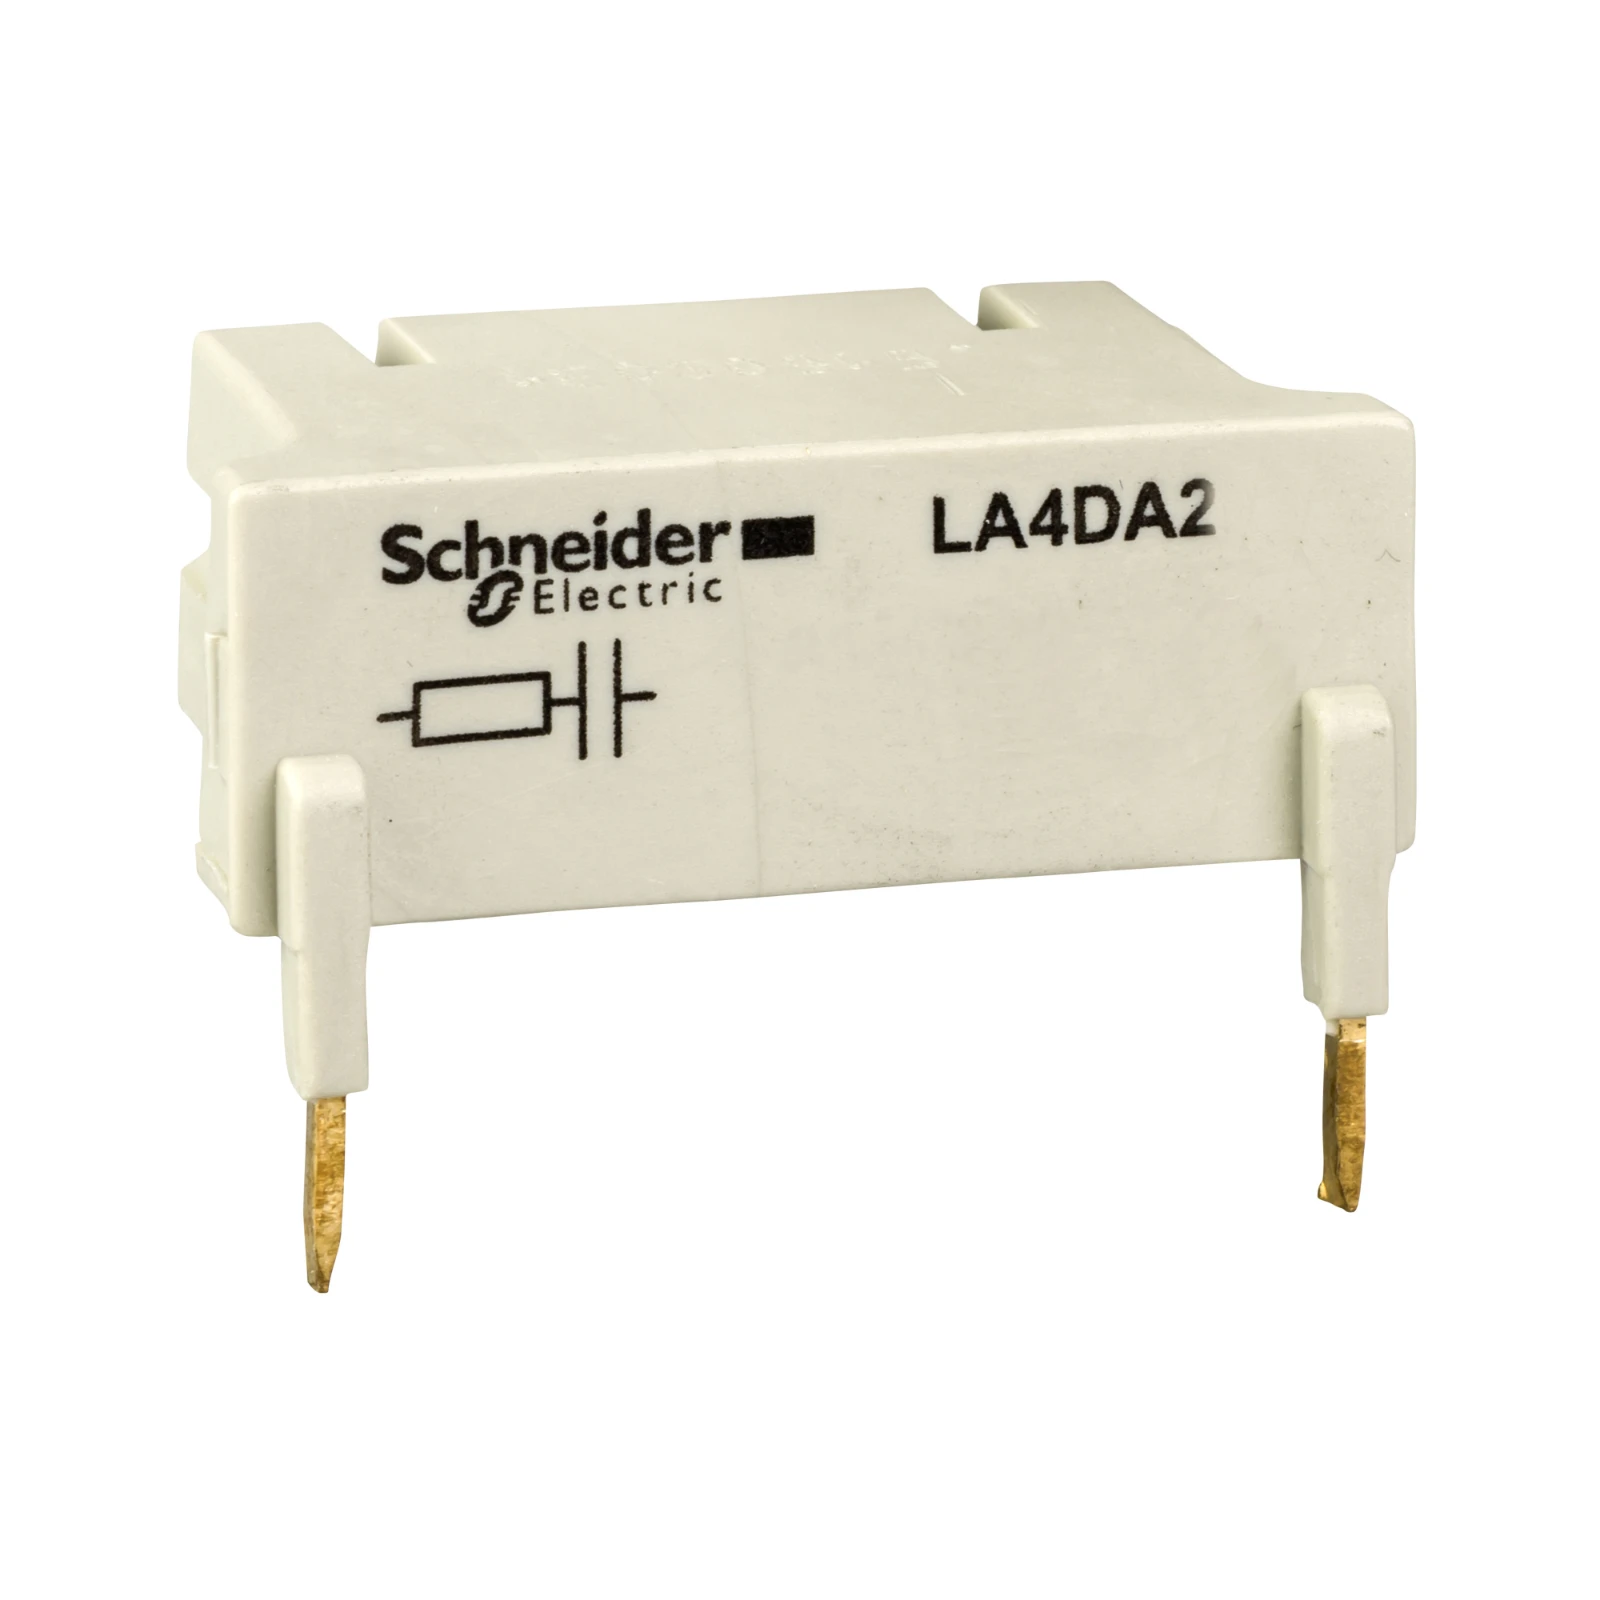 1150841 - Schneider Electric LA4DA2N